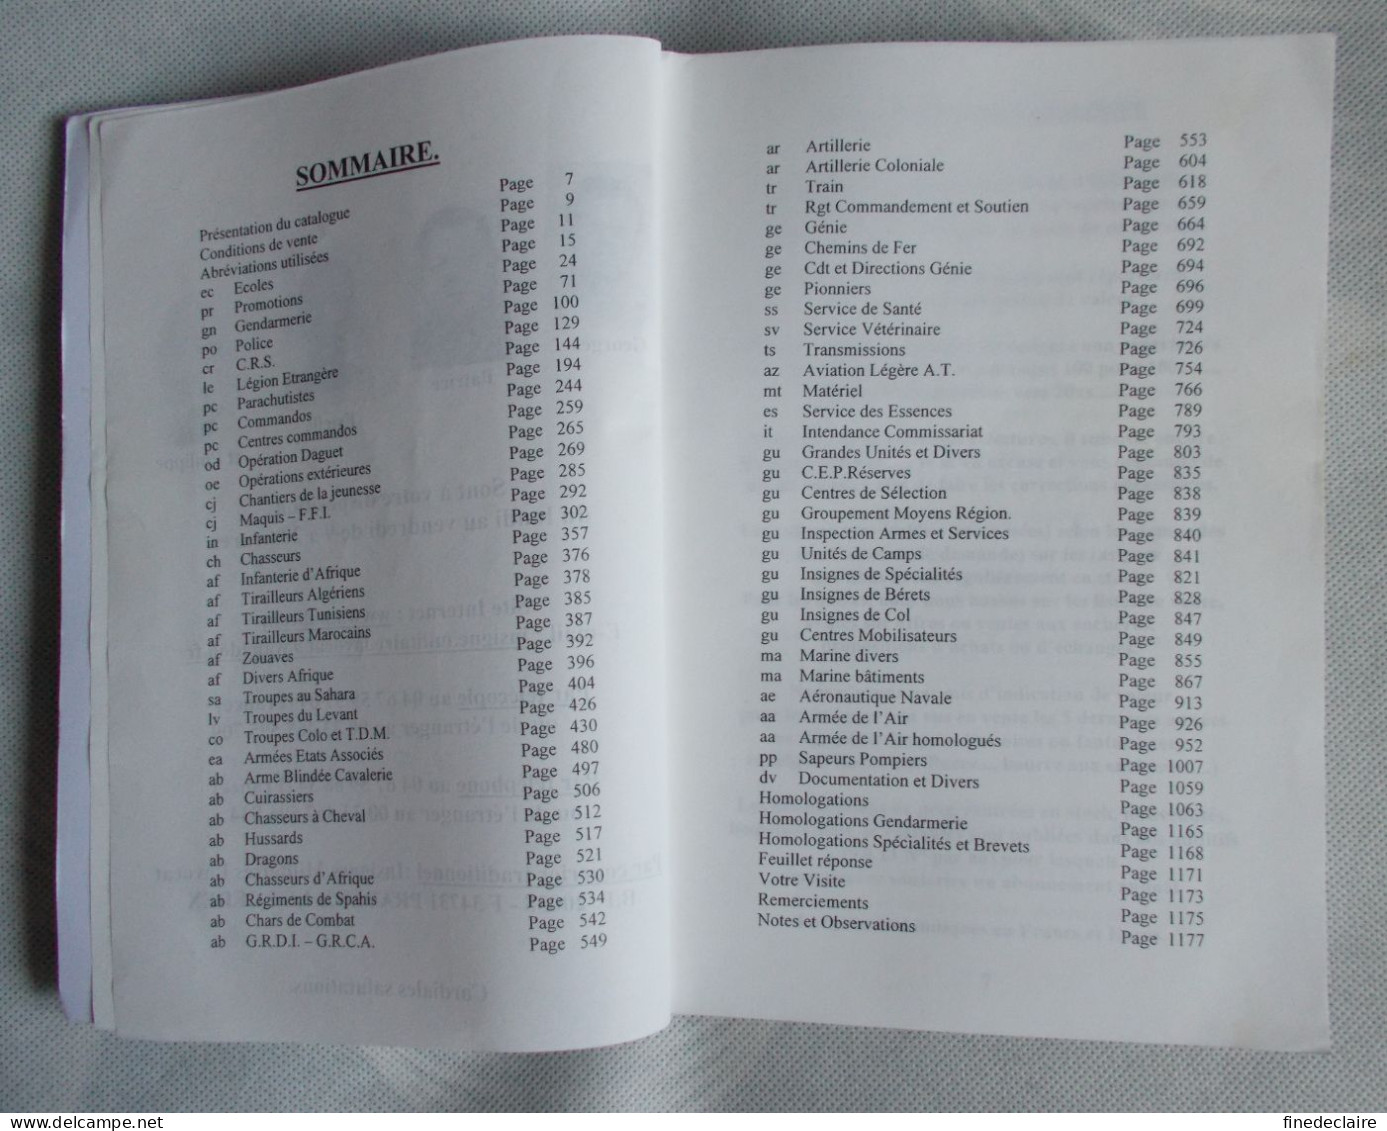 Catalogue - Insignes Militaires Lavocat 2003 - 1184 Pages - France